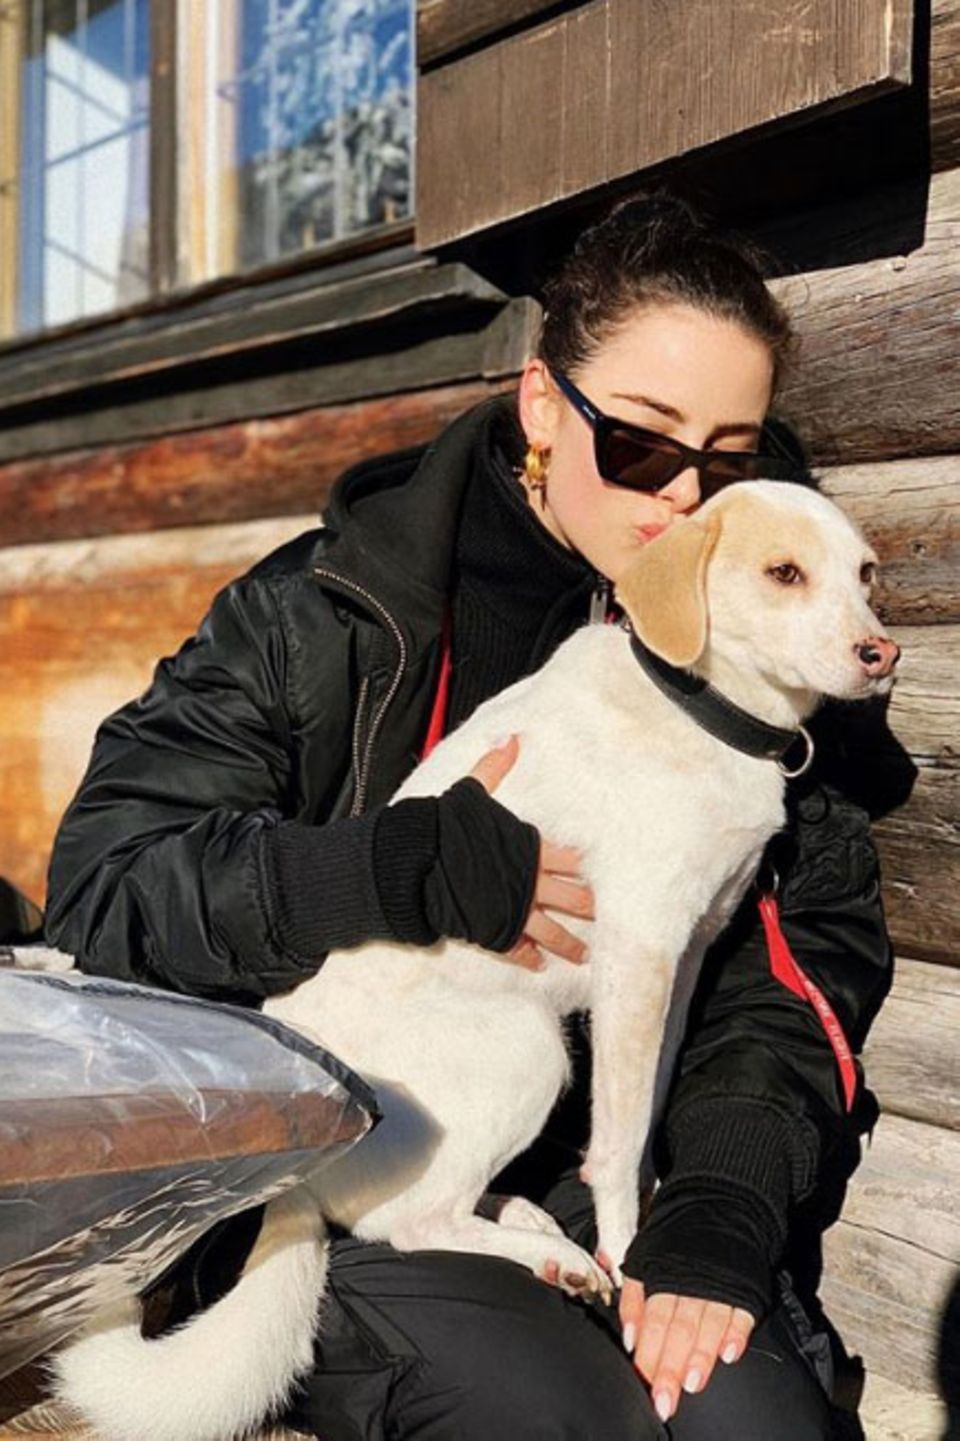 Lena Meyer-Landrut verbringt am liebsten Zeit mit ihrem Hund Kiwi, wie hier während ihres entspannten Winterurlaubs in den Bergen.